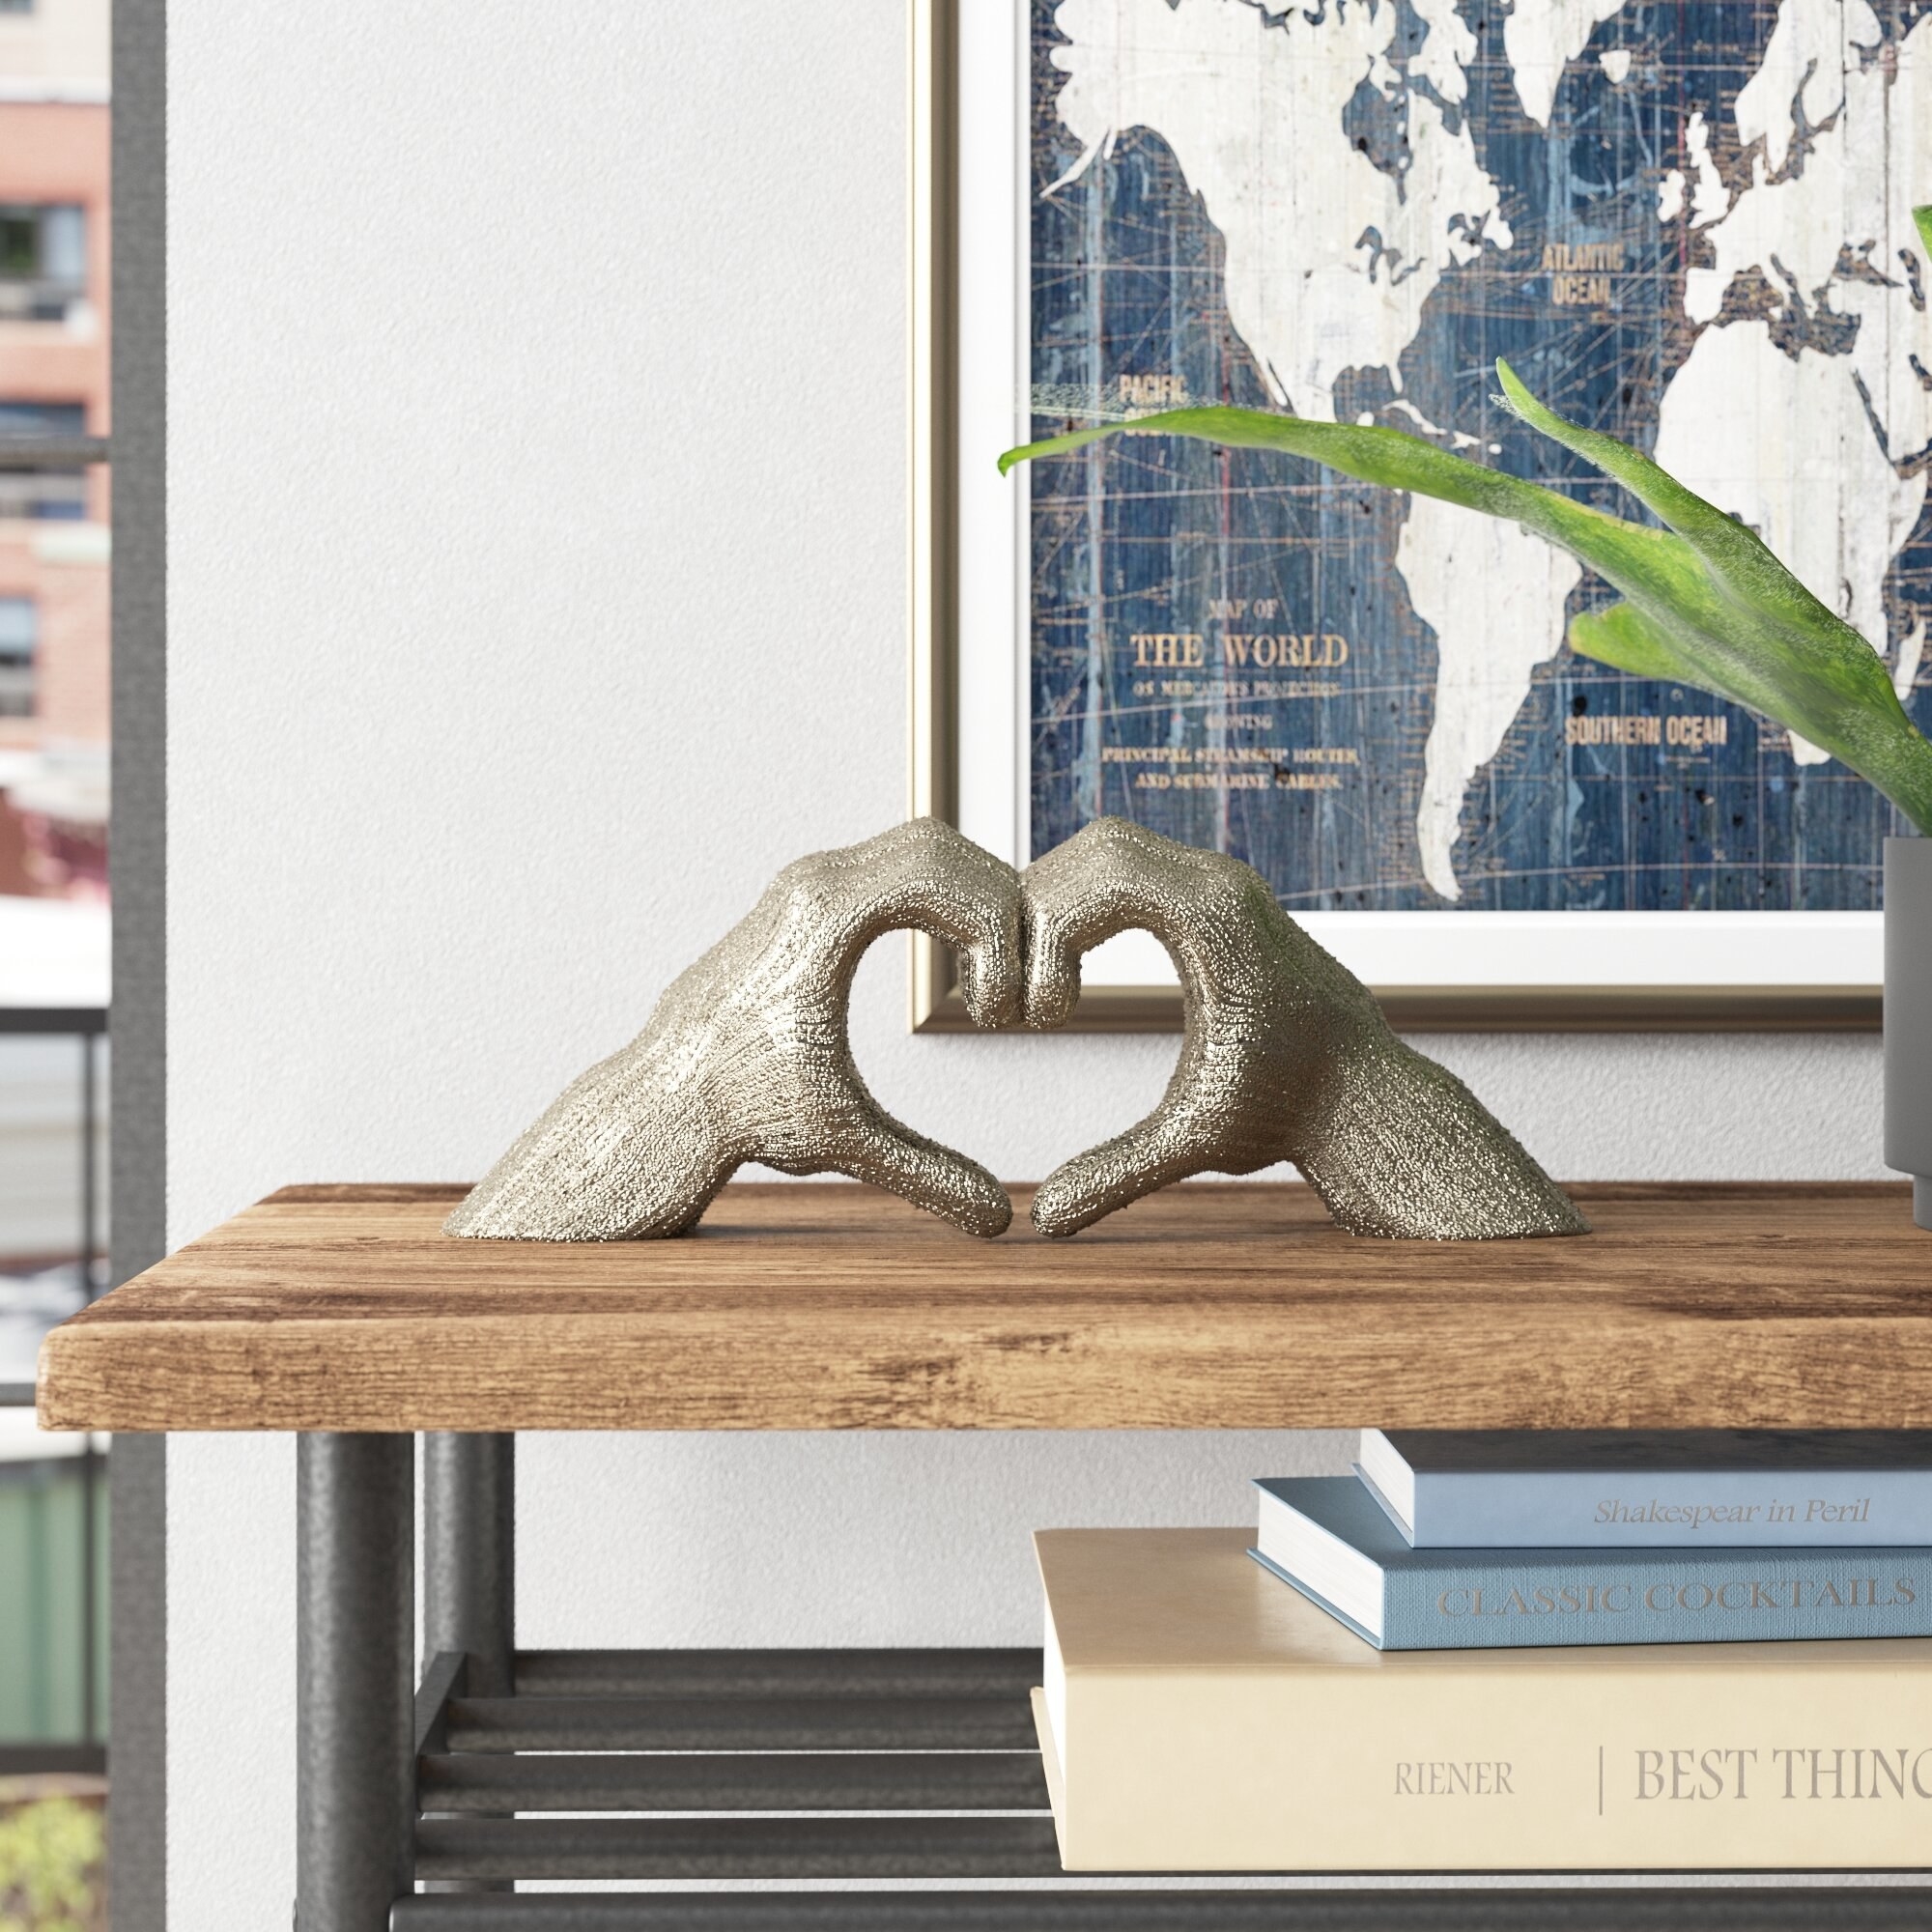 A hand heart sculpture resting on a bookshelf